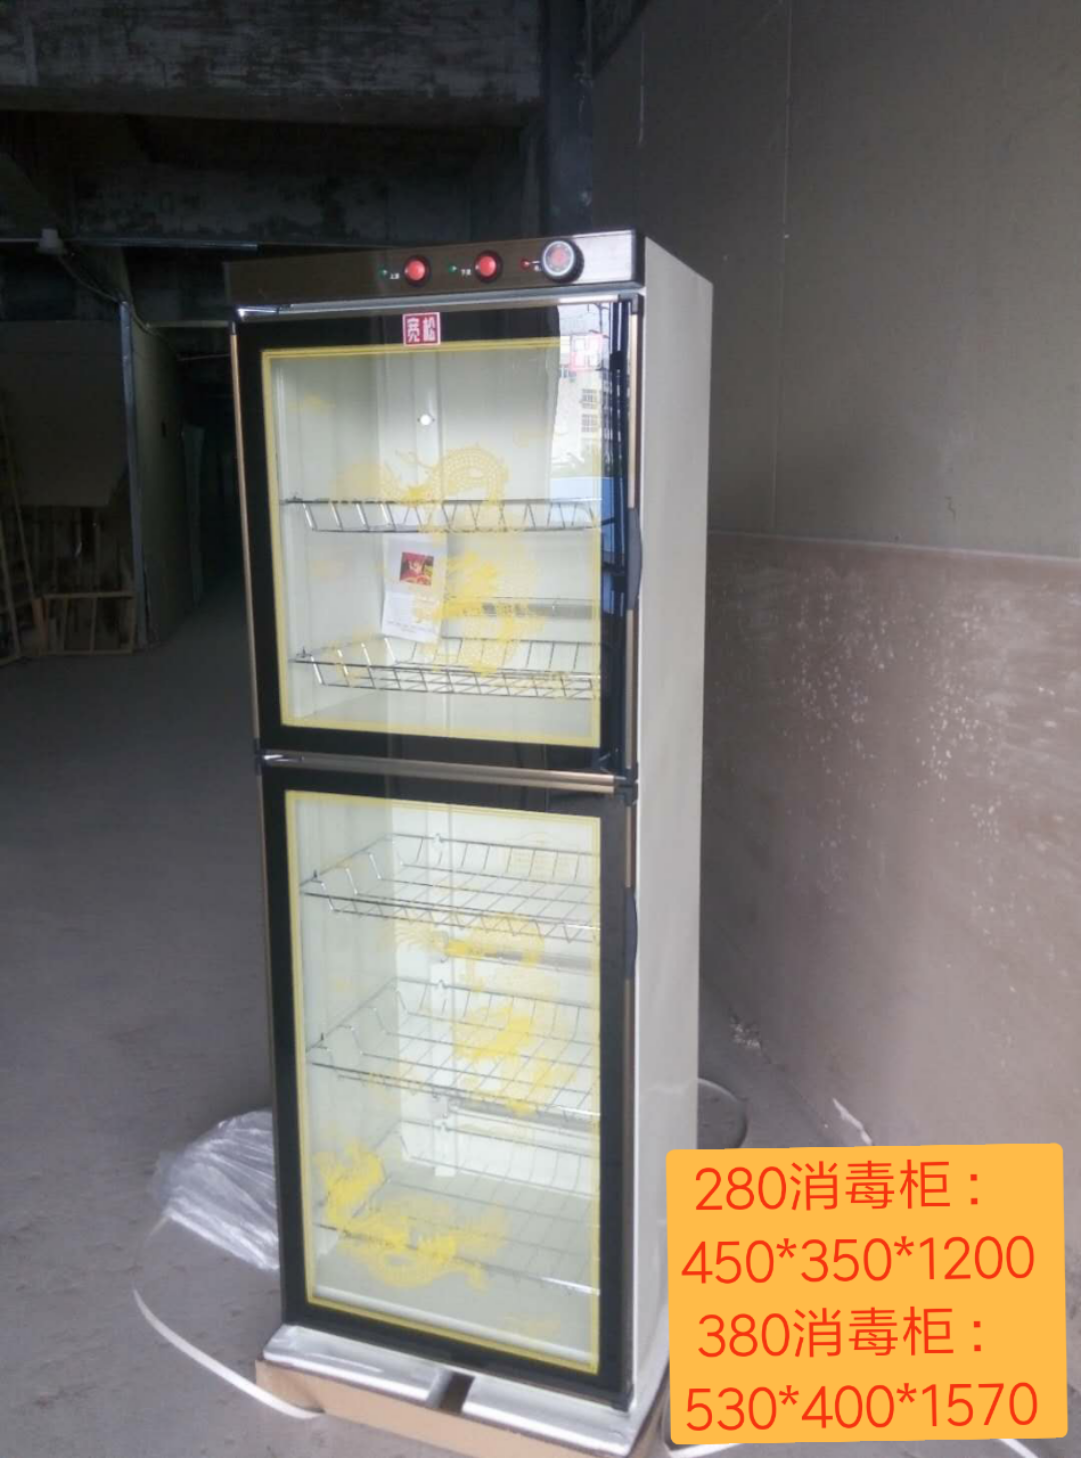 全新280-380消毒柜厂家直销-四川龙美电器